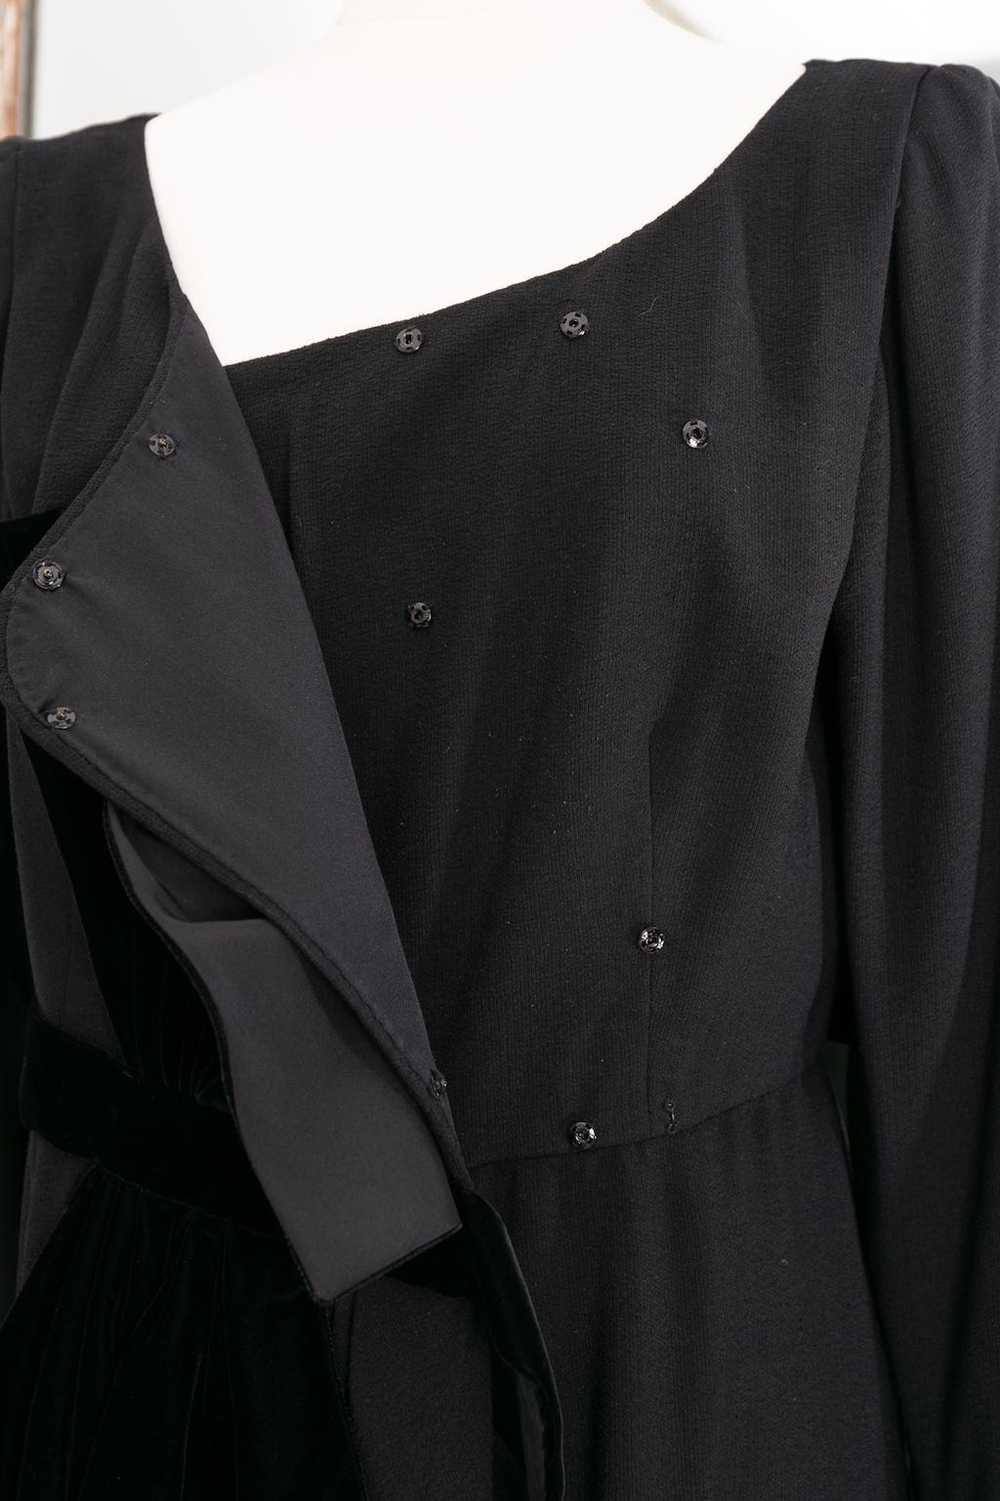 Yves saint Laurent Haute Couture black dress - image 6